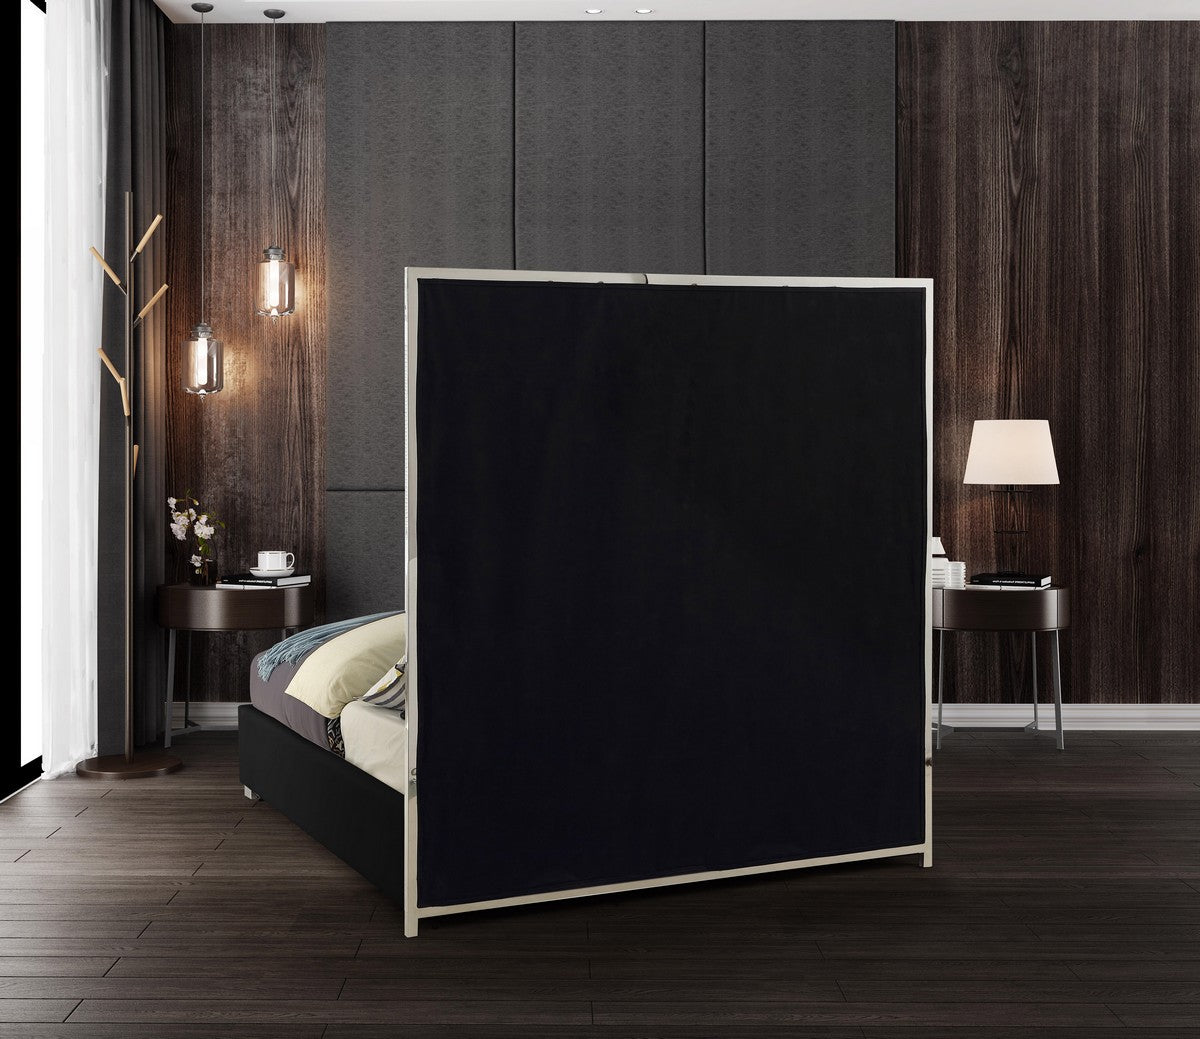 Meridian Furniture Milan Black Faux Leather King Bed